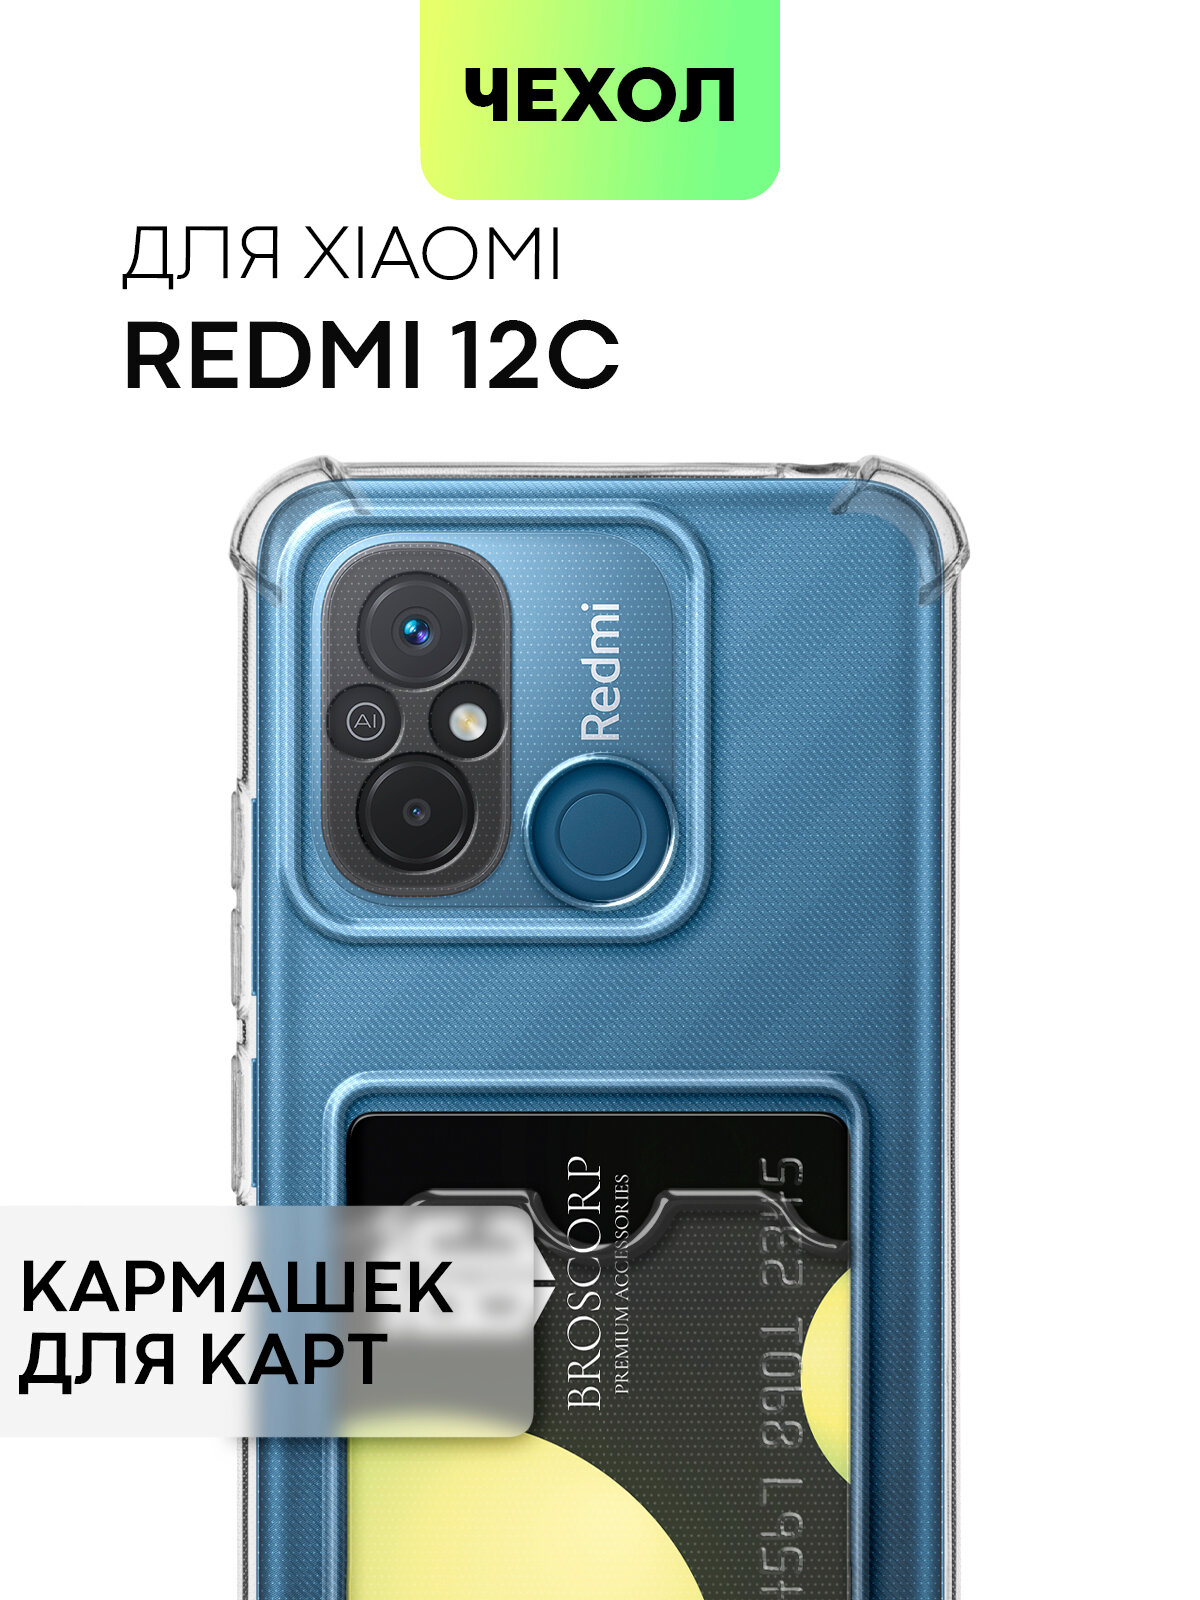 Чехол с карманом для Xiaomi Redmi 12С (Сяоми Редми 12Ц) усиленный, силиконовый чехол, защита камер, для карт, прозрачный чехол